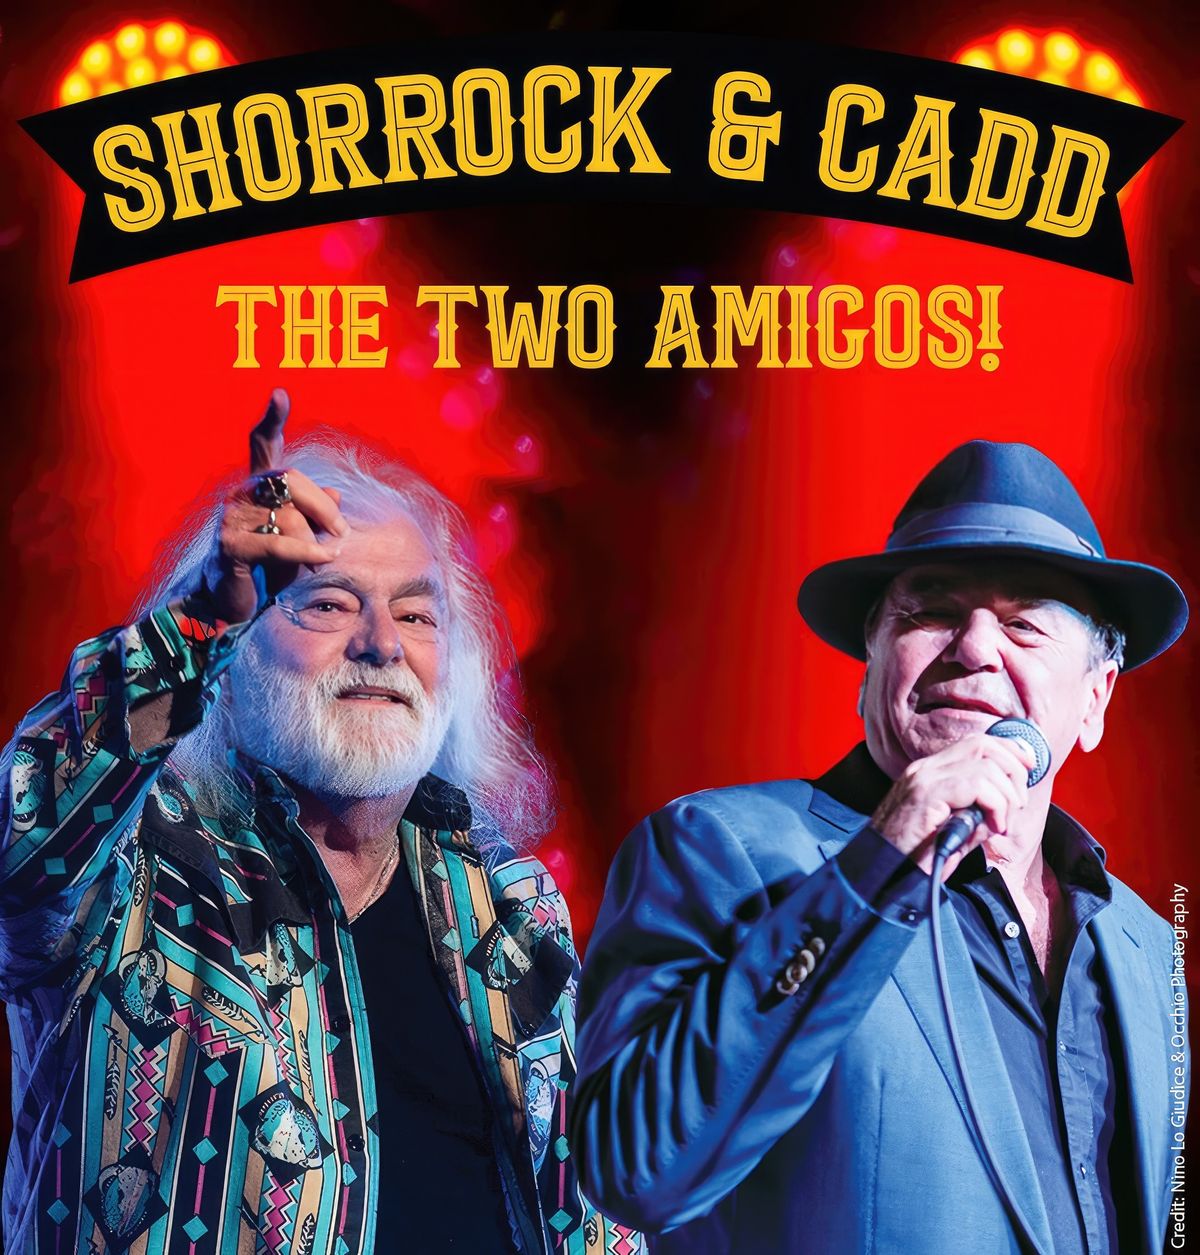 Glenn Shorrock & Brian Cadd - The Two Amigos!